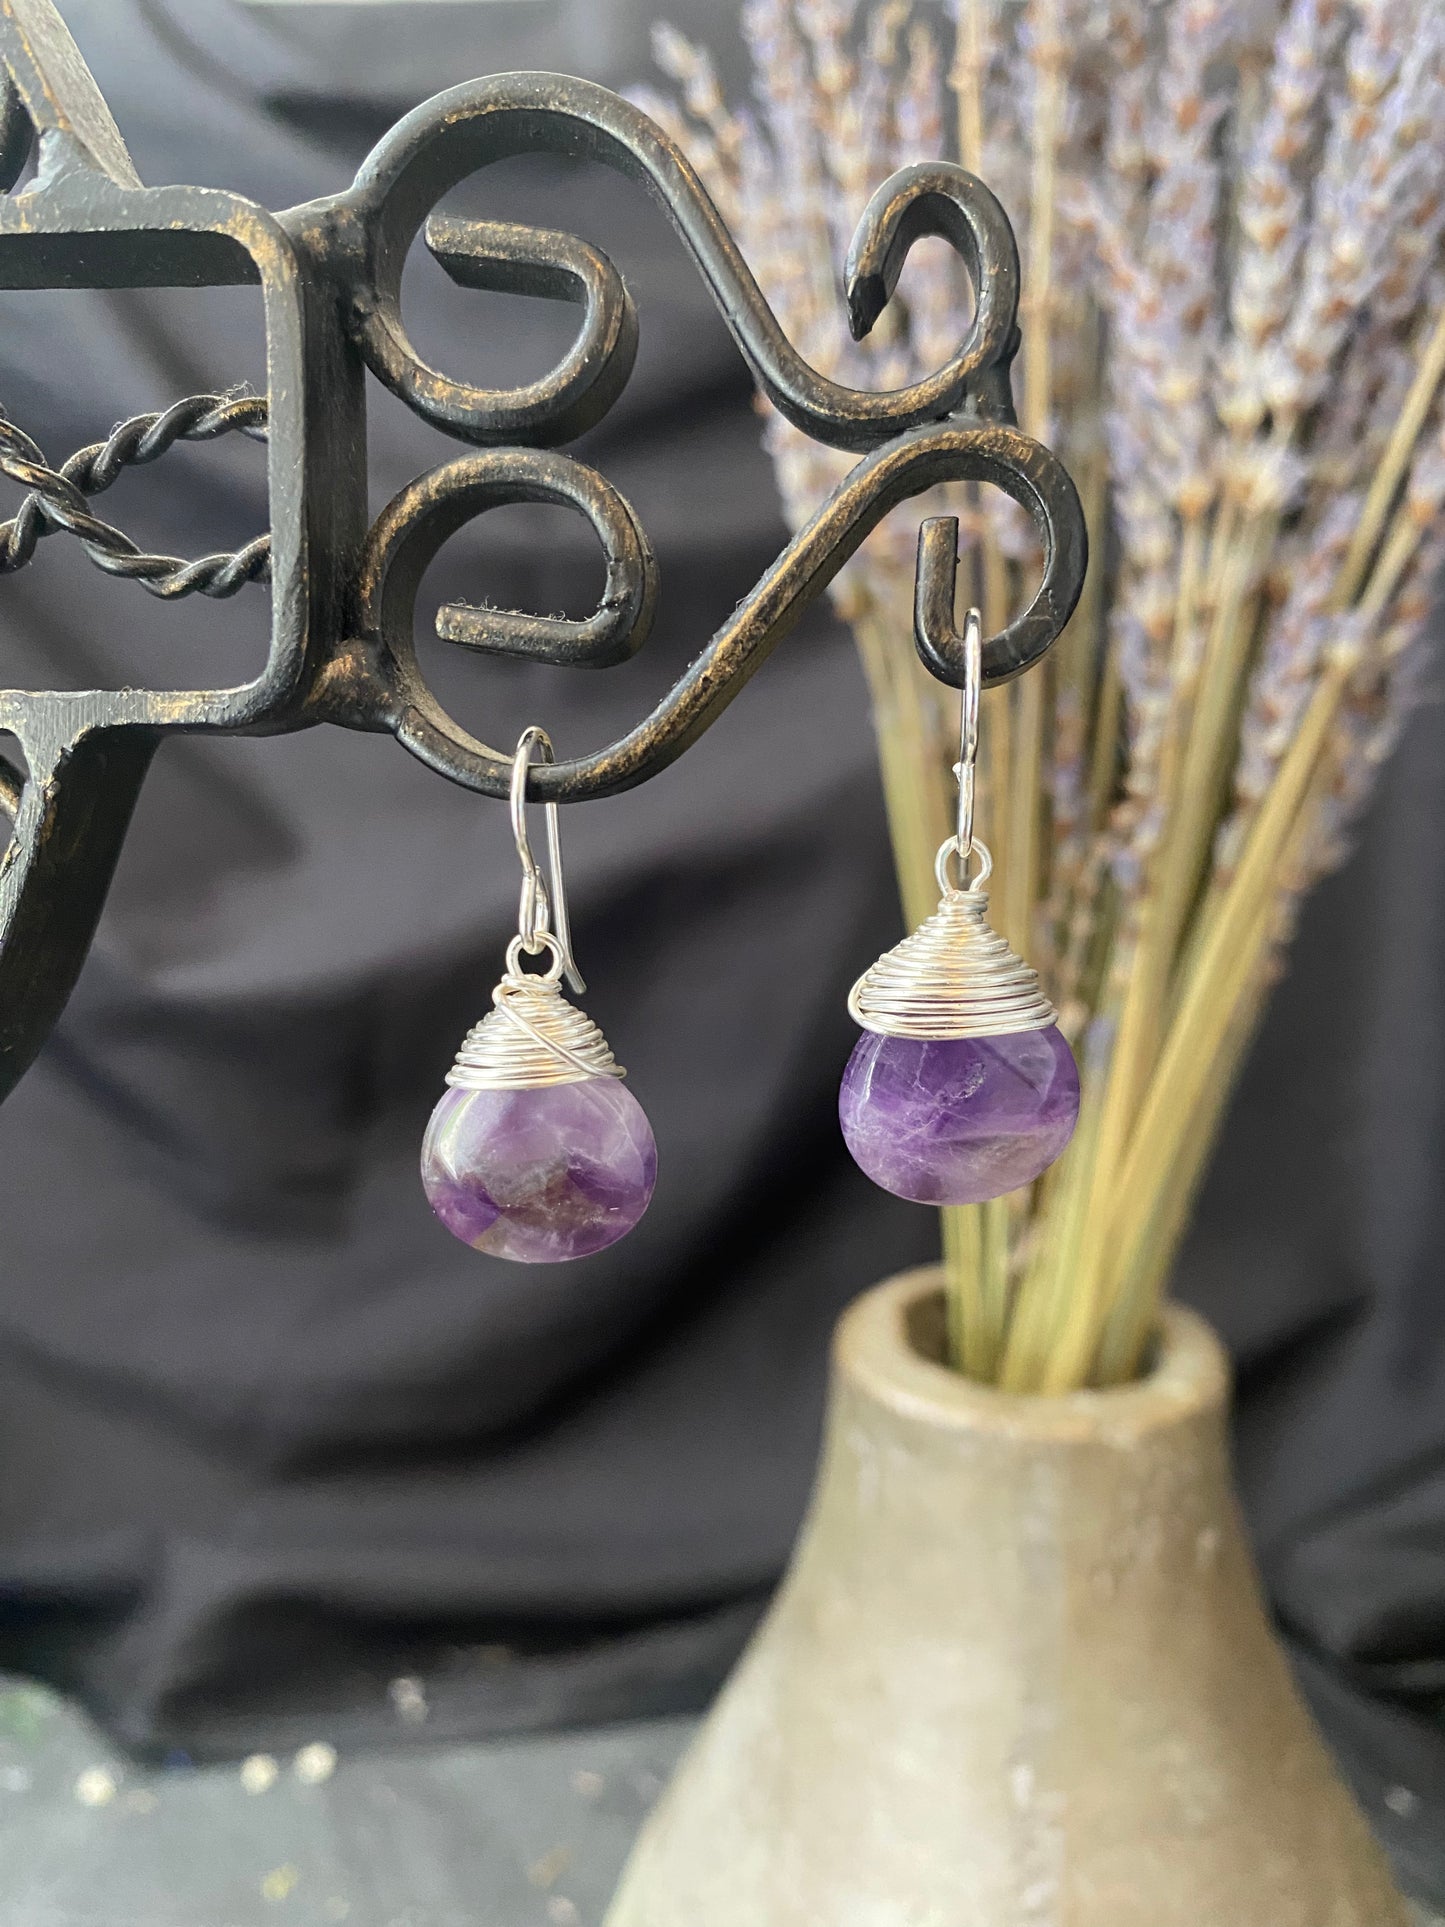 Amethyst pear shape stone drops, sterling silver metal earrings, jewelry.